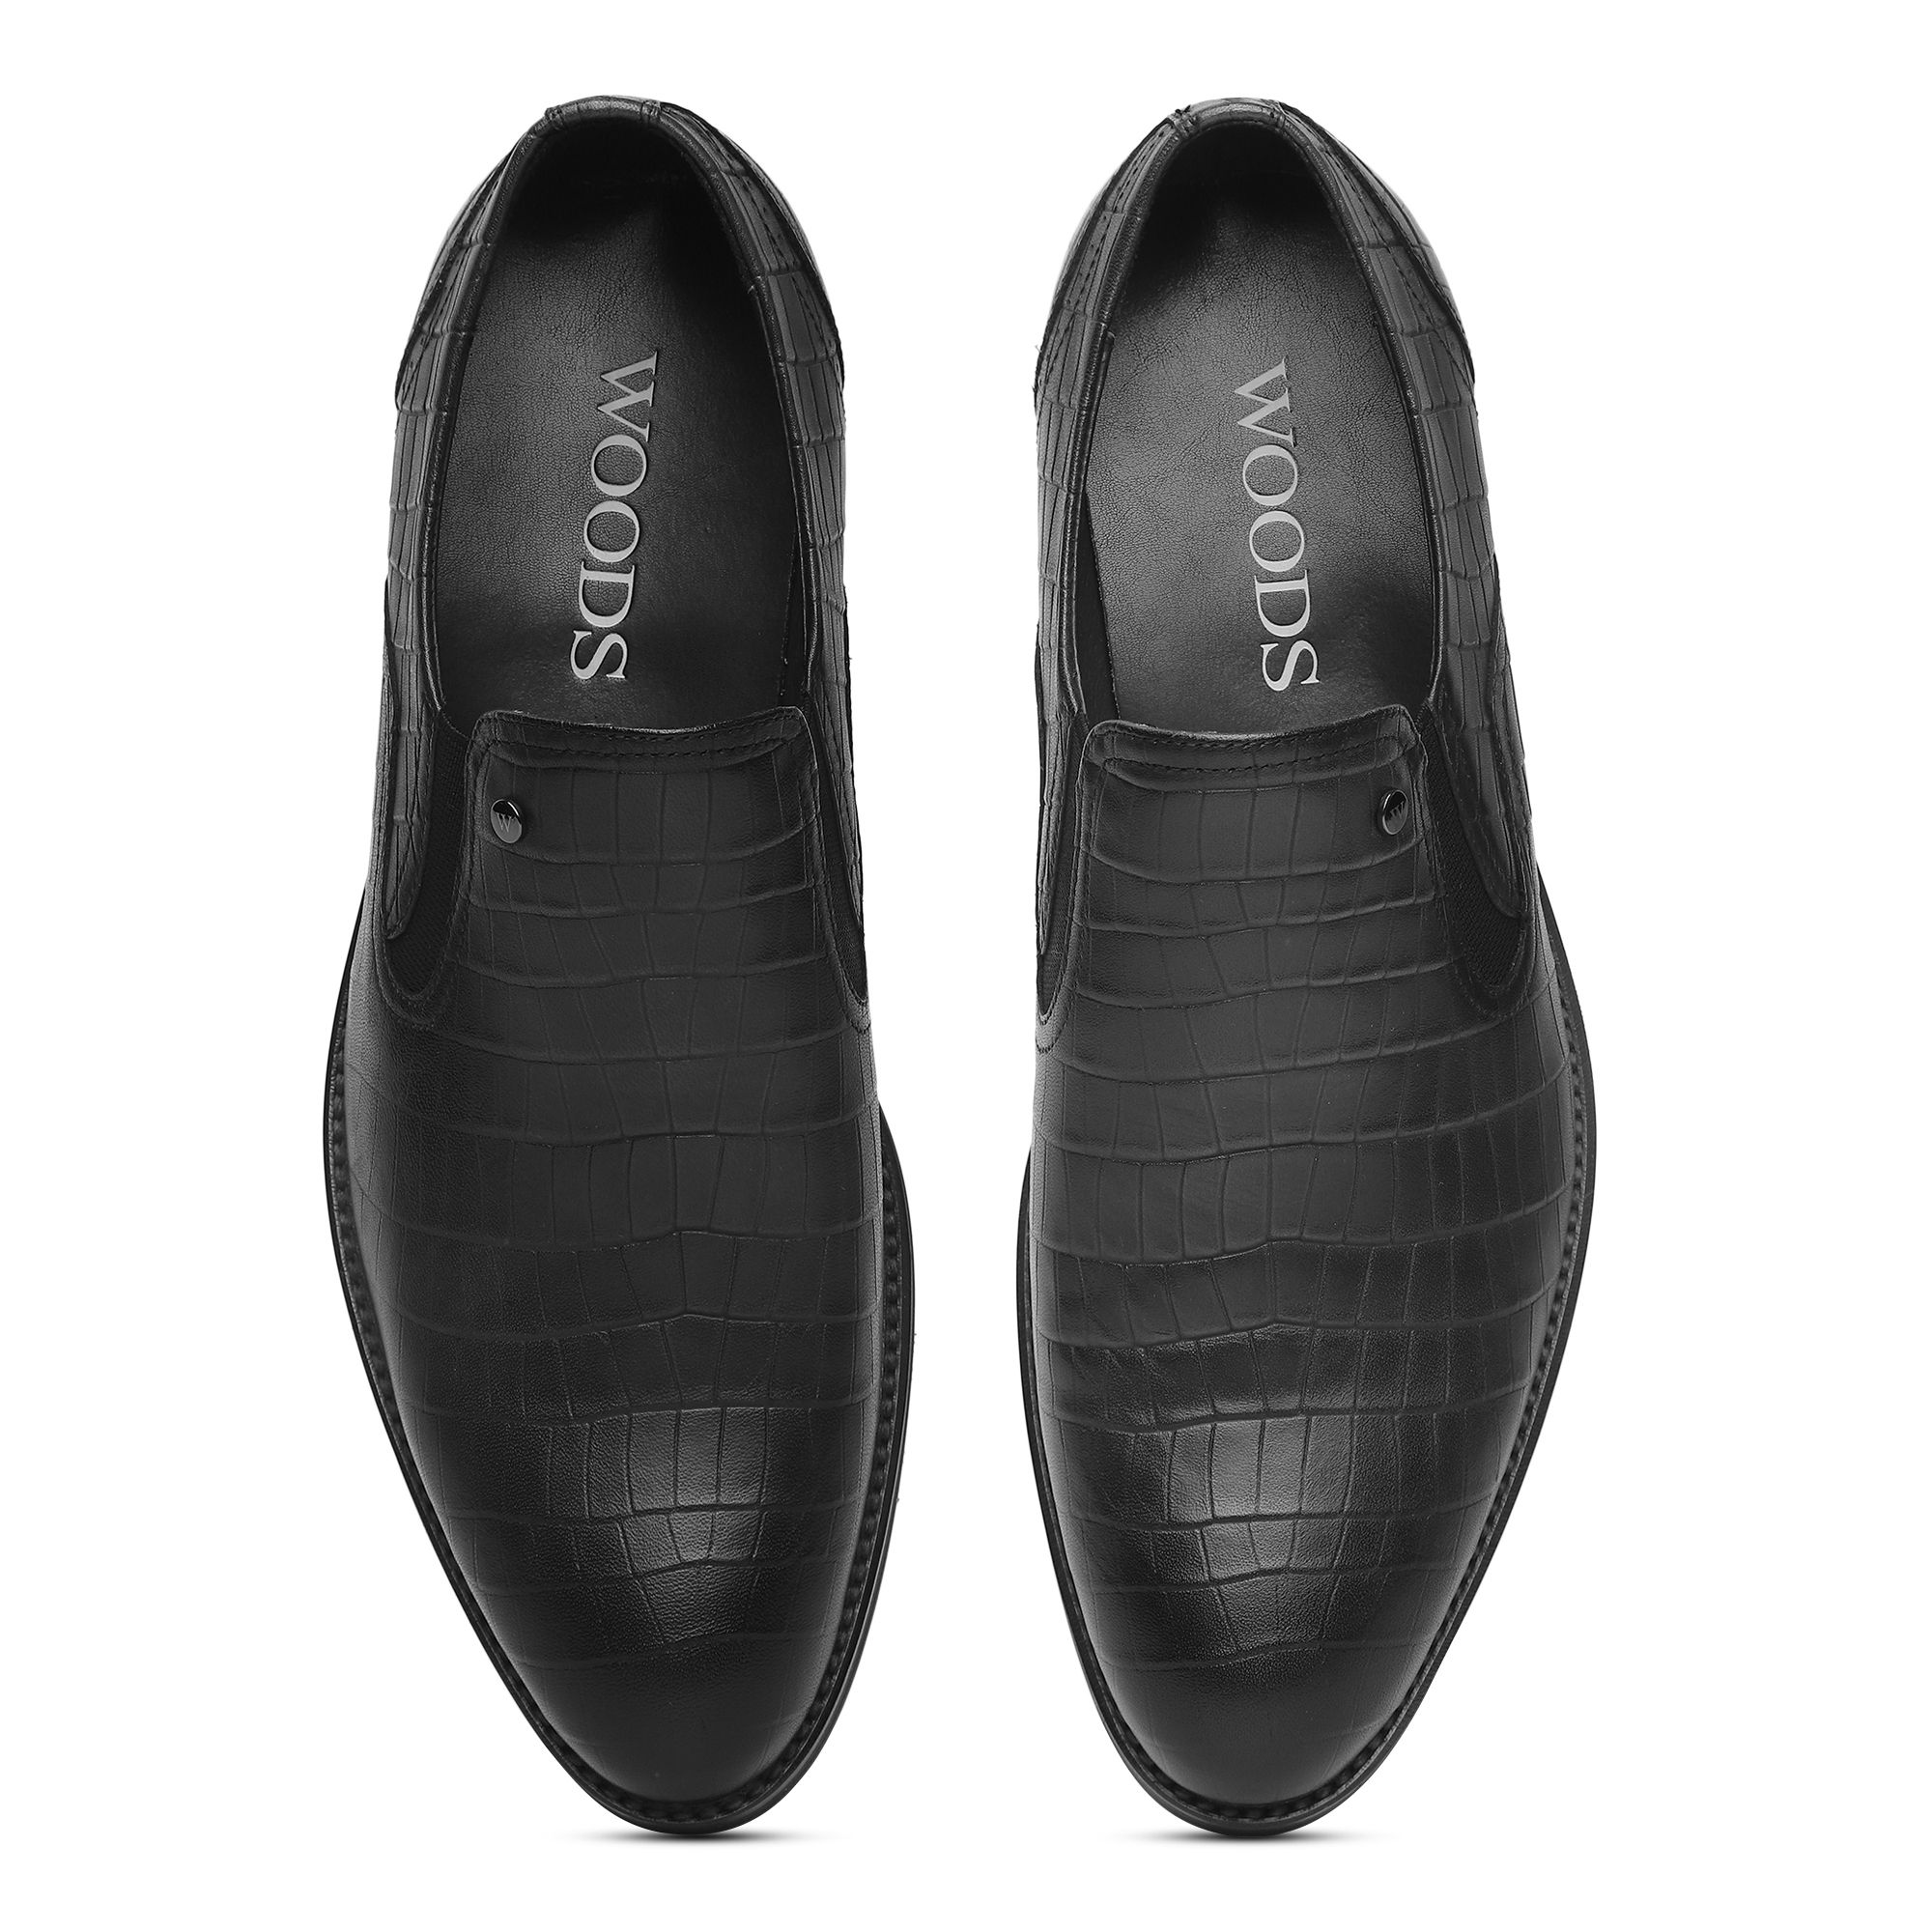 Black Slip-on shoes for Men